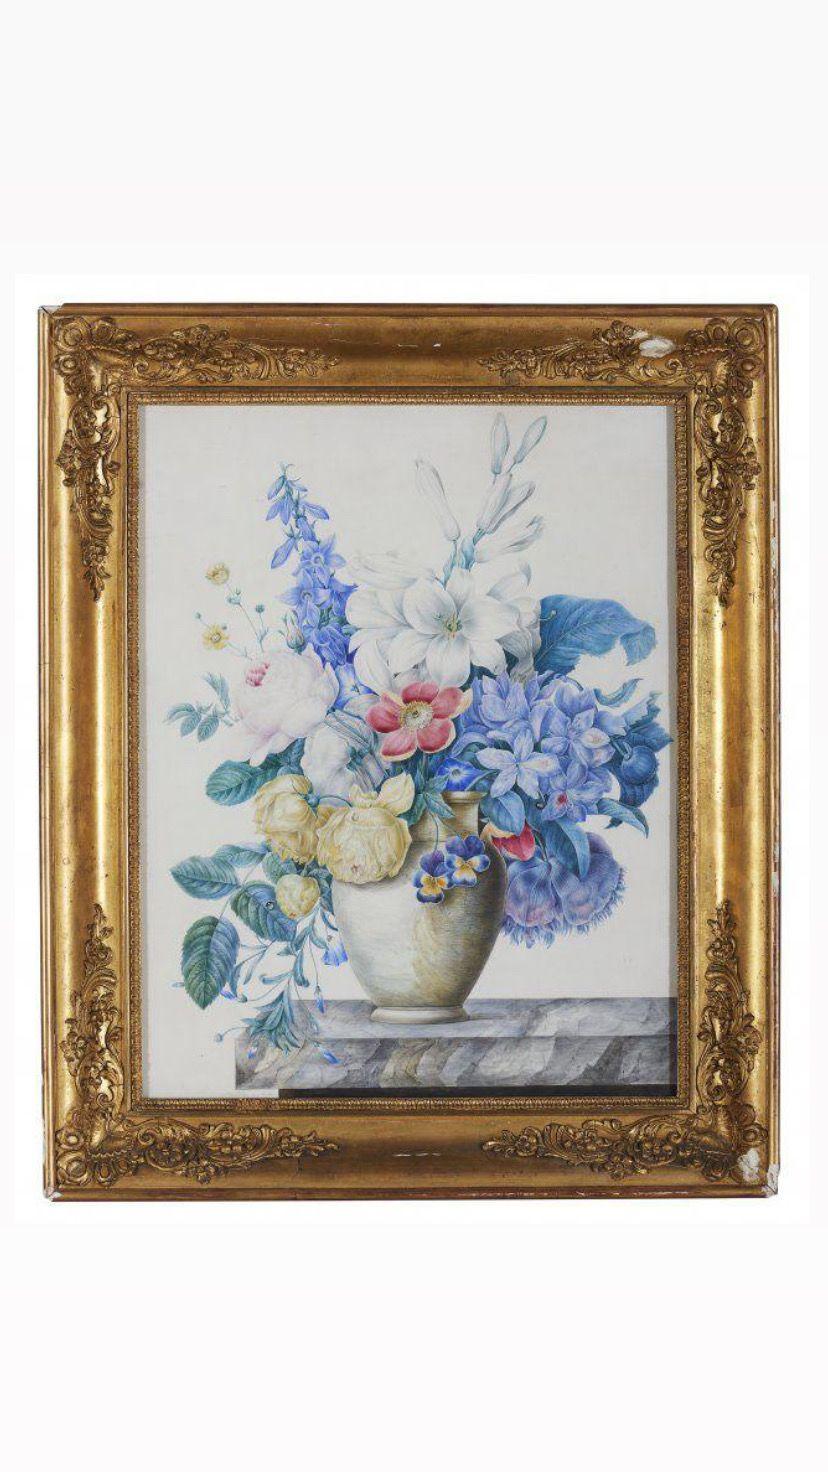 Les peintures à l'aquarelle représentant des fleurs sont une forme d'art populaire et magnifique.

 L'artiste Marie-Louise-Anne-Victoire de la Fouchardière a utilisé l'aquarelle pour capturer la nature délicate et vibrante des fleurs. La qualité